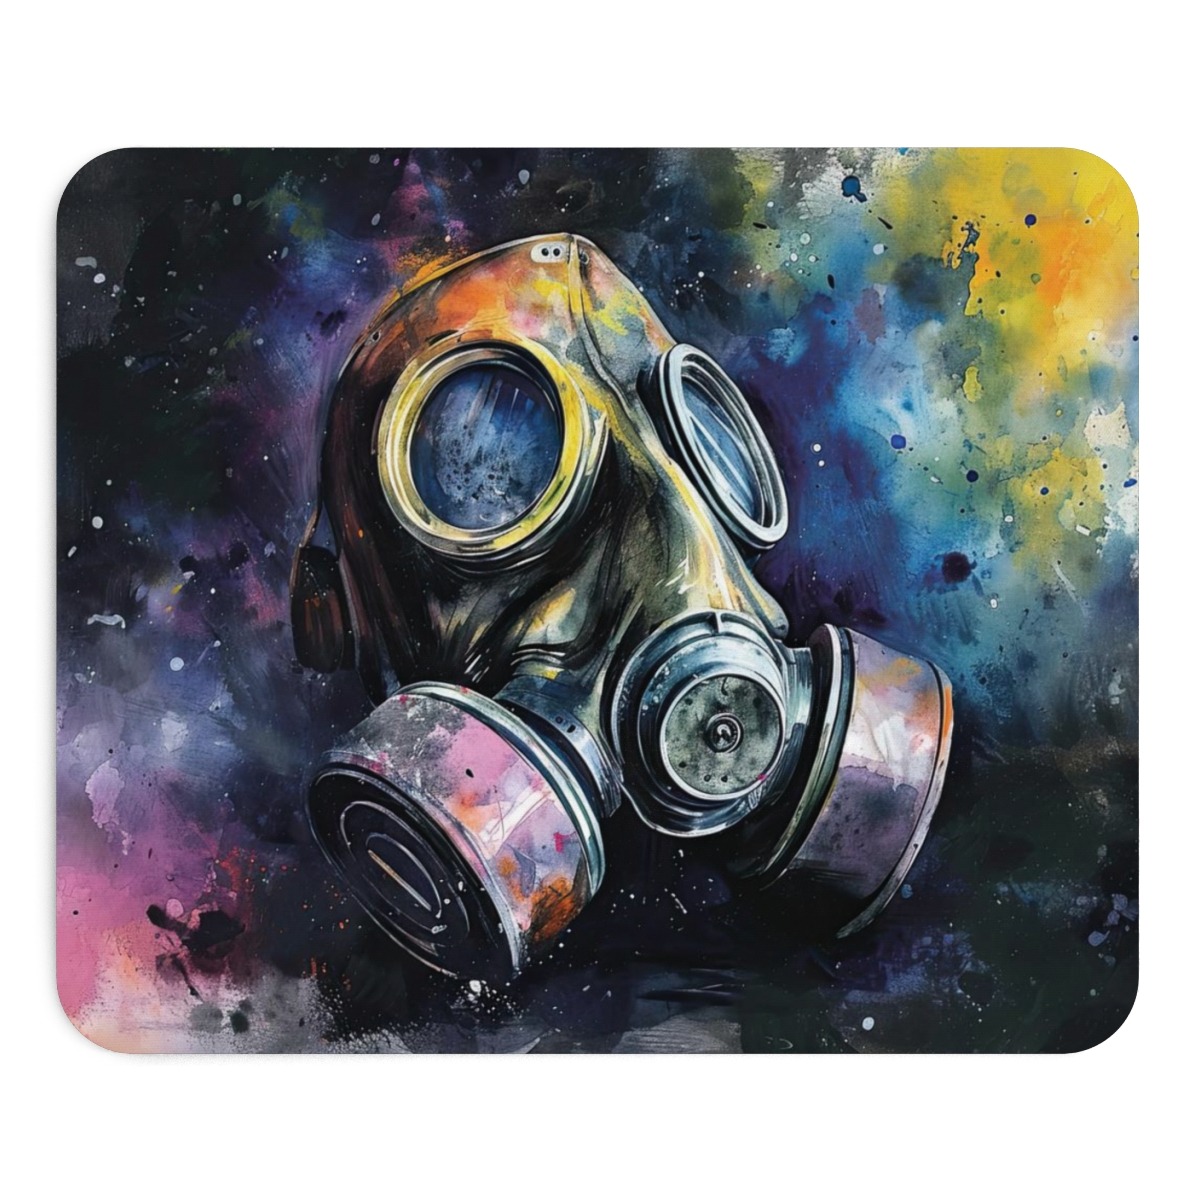 Wasserfarben-Gasmasken-Mauspad - 9x7.5 Zoll (23x19 cm), rutschfest, künstlerische Farben